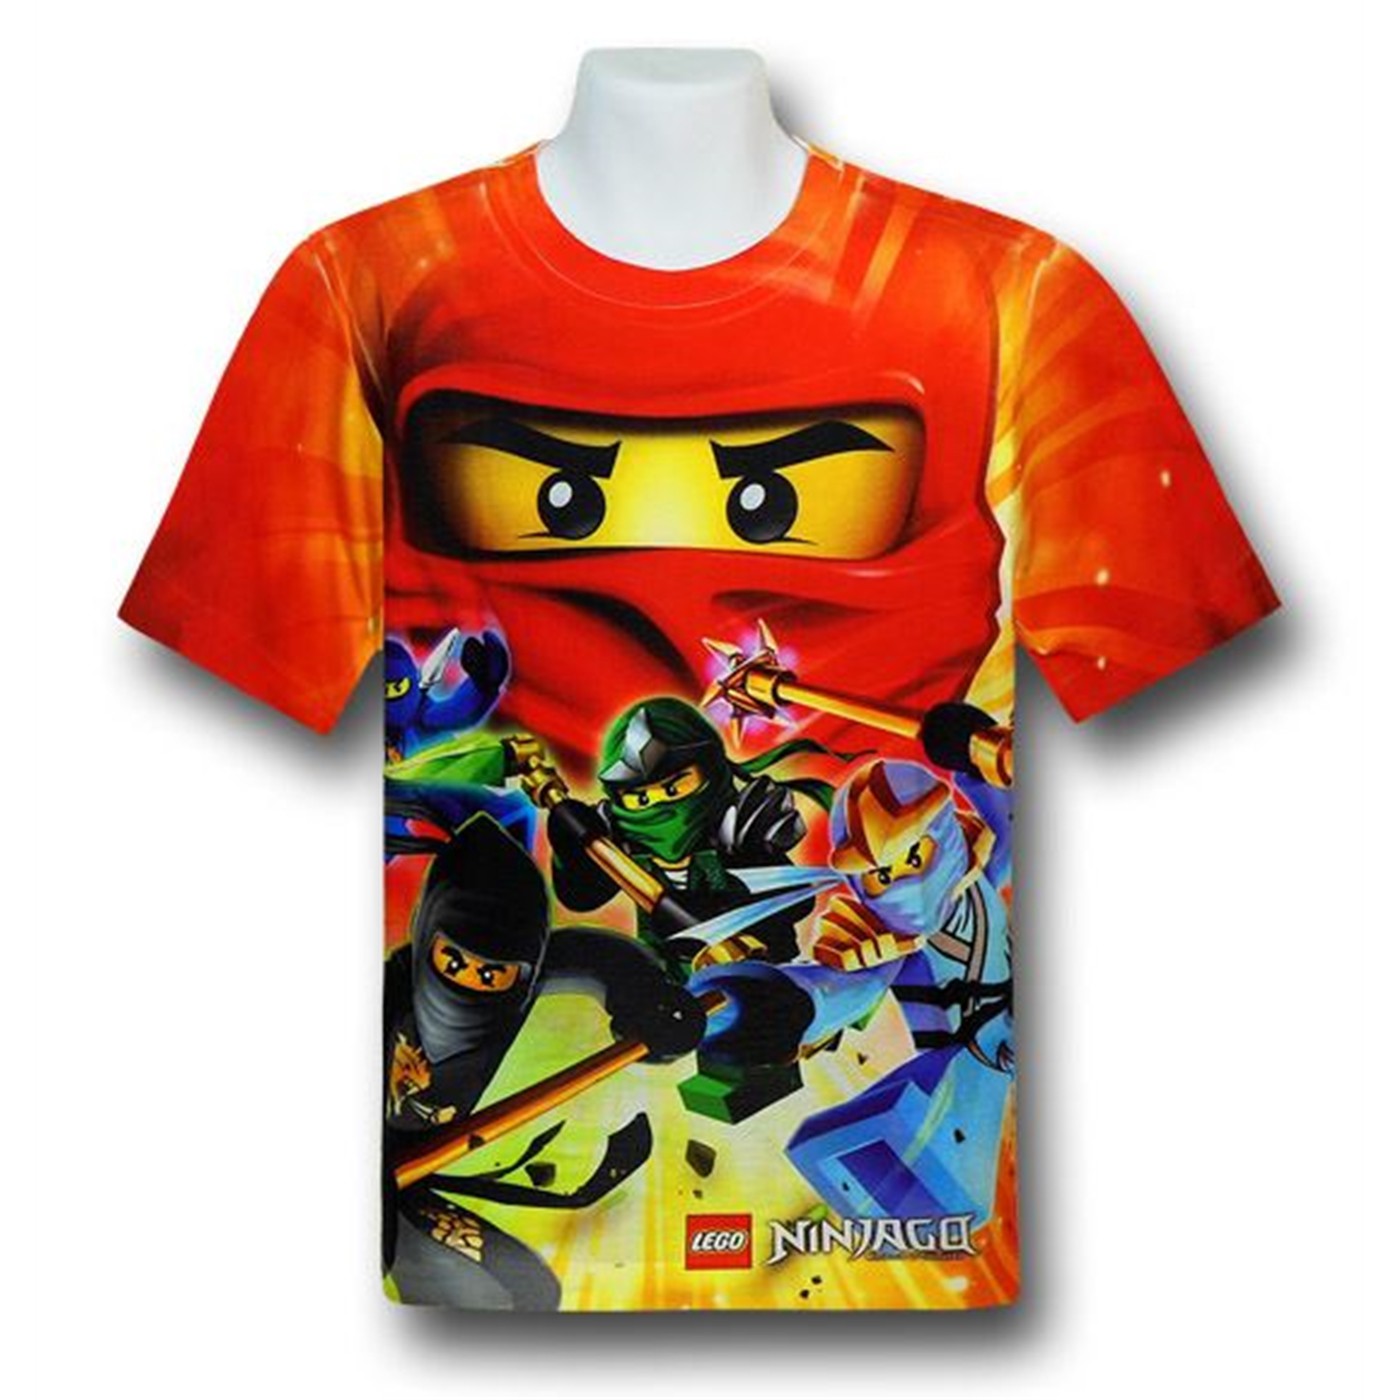 Ninjago Kids All-Over Print T-Shirt